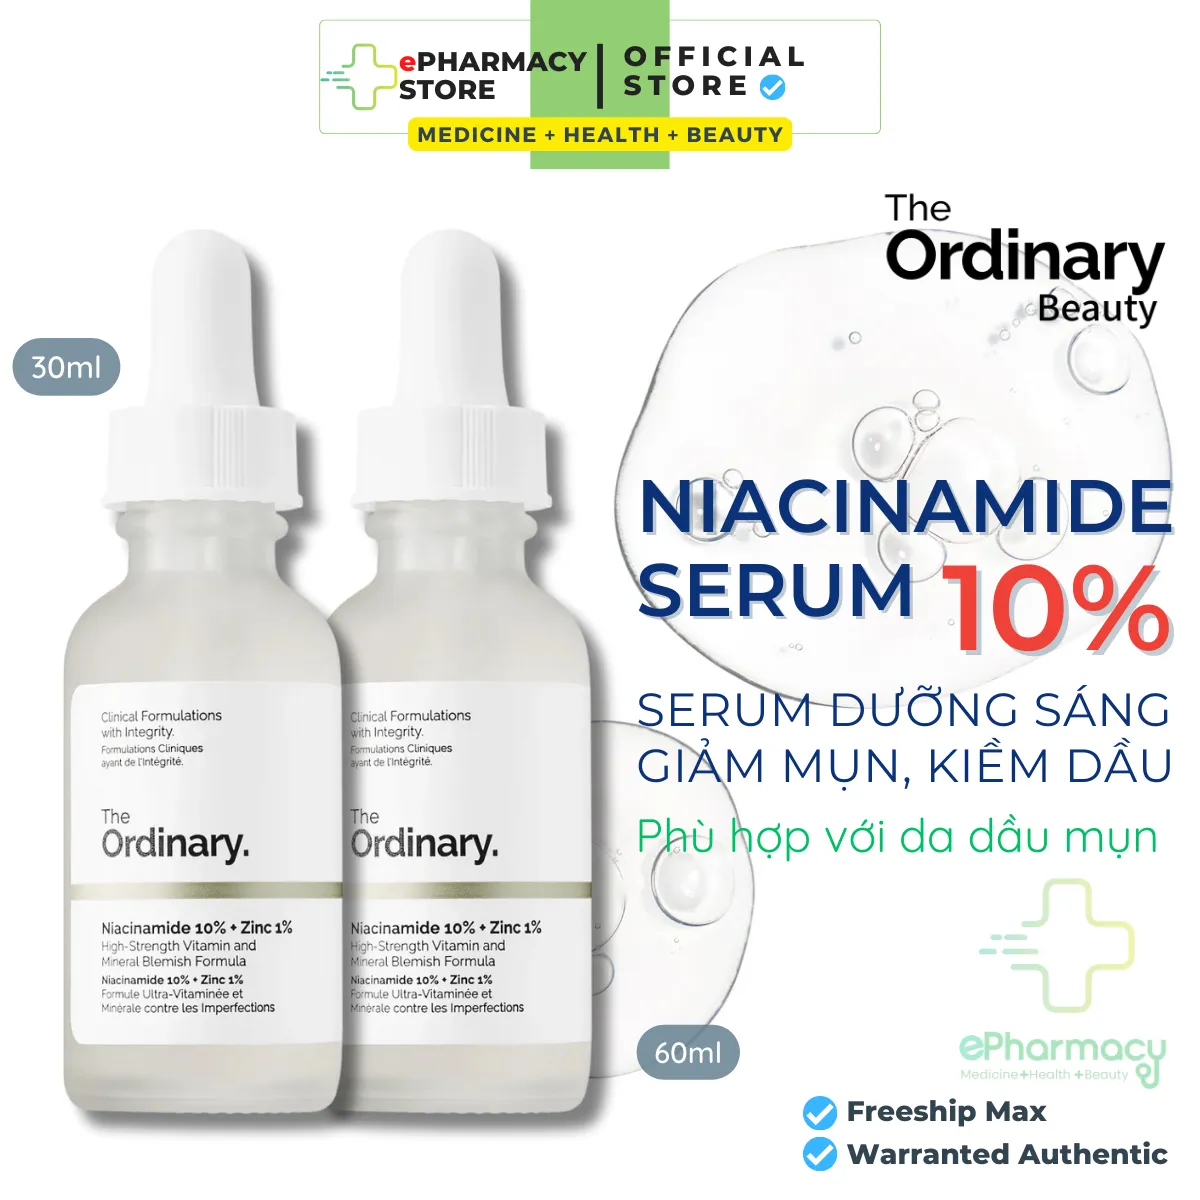 Serum Niacinamide 10% + Zinc 1% The Ordinary - Tinh Chất The Ordinary kiềm dầu giảm mụn giảm thâm 30ML/60ML